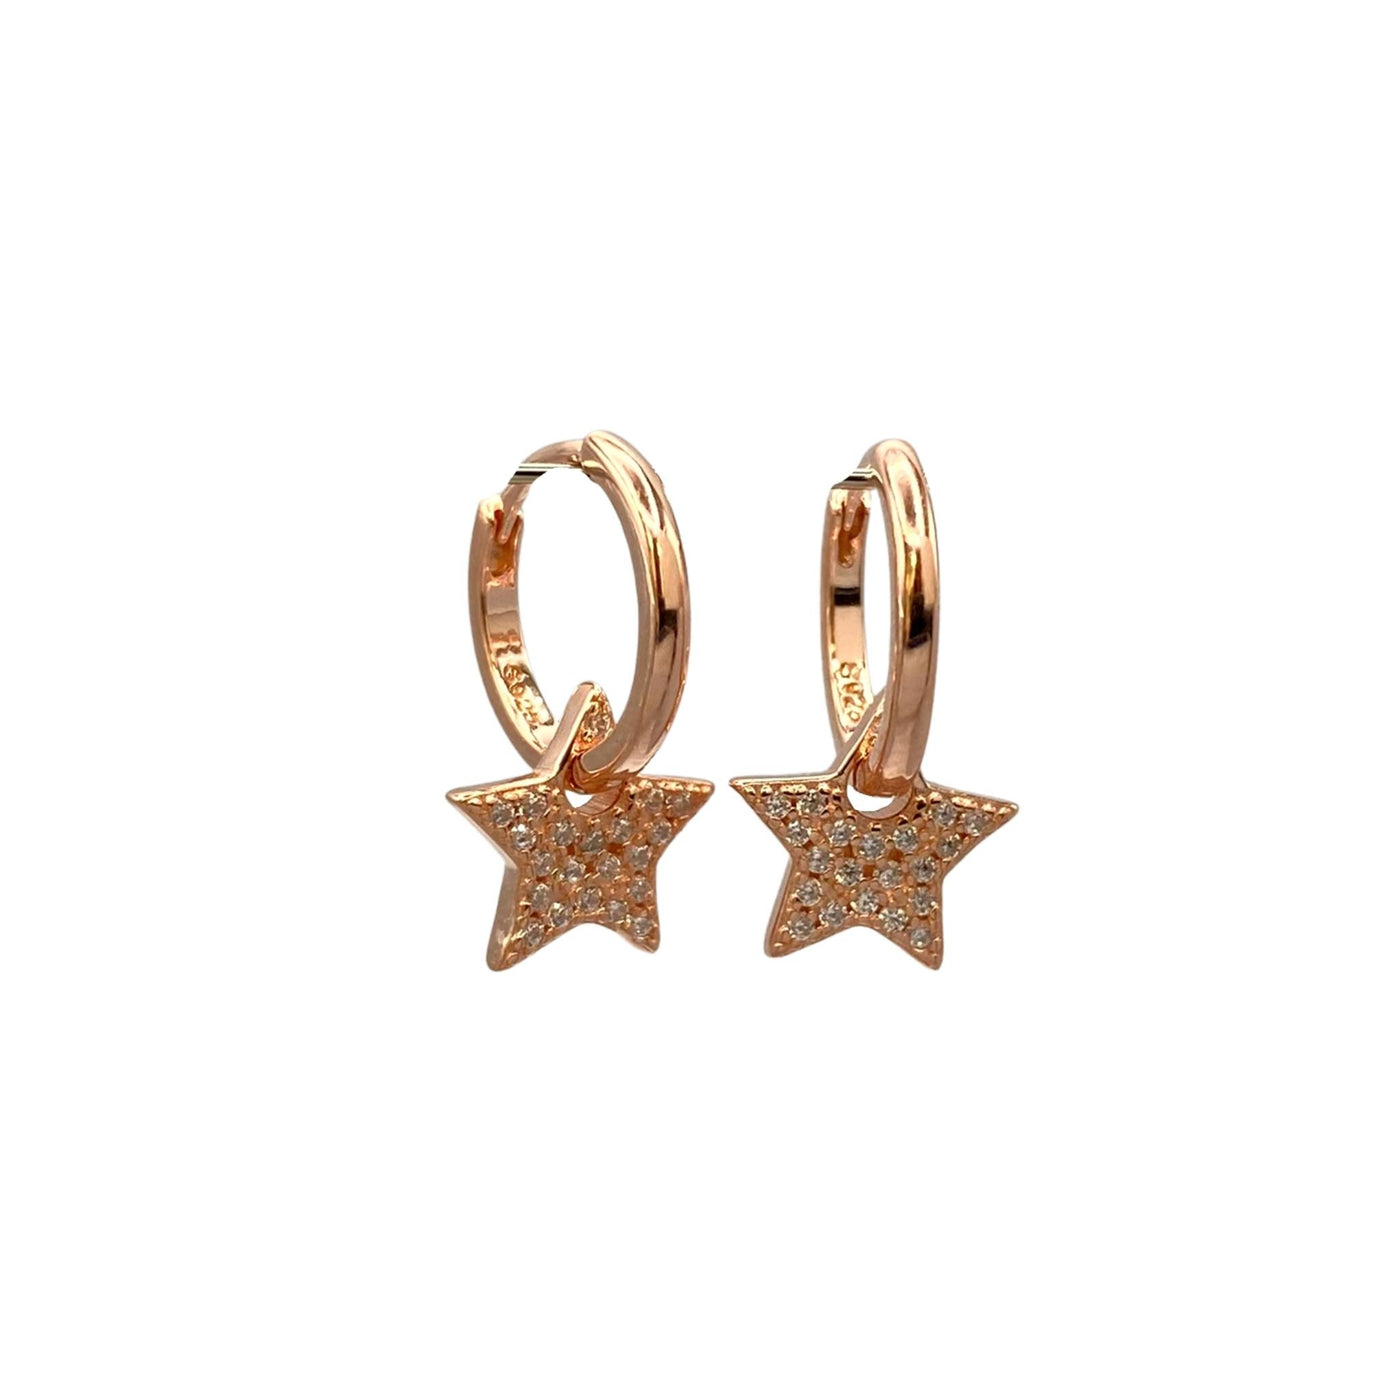 Silver hoop earrings with star